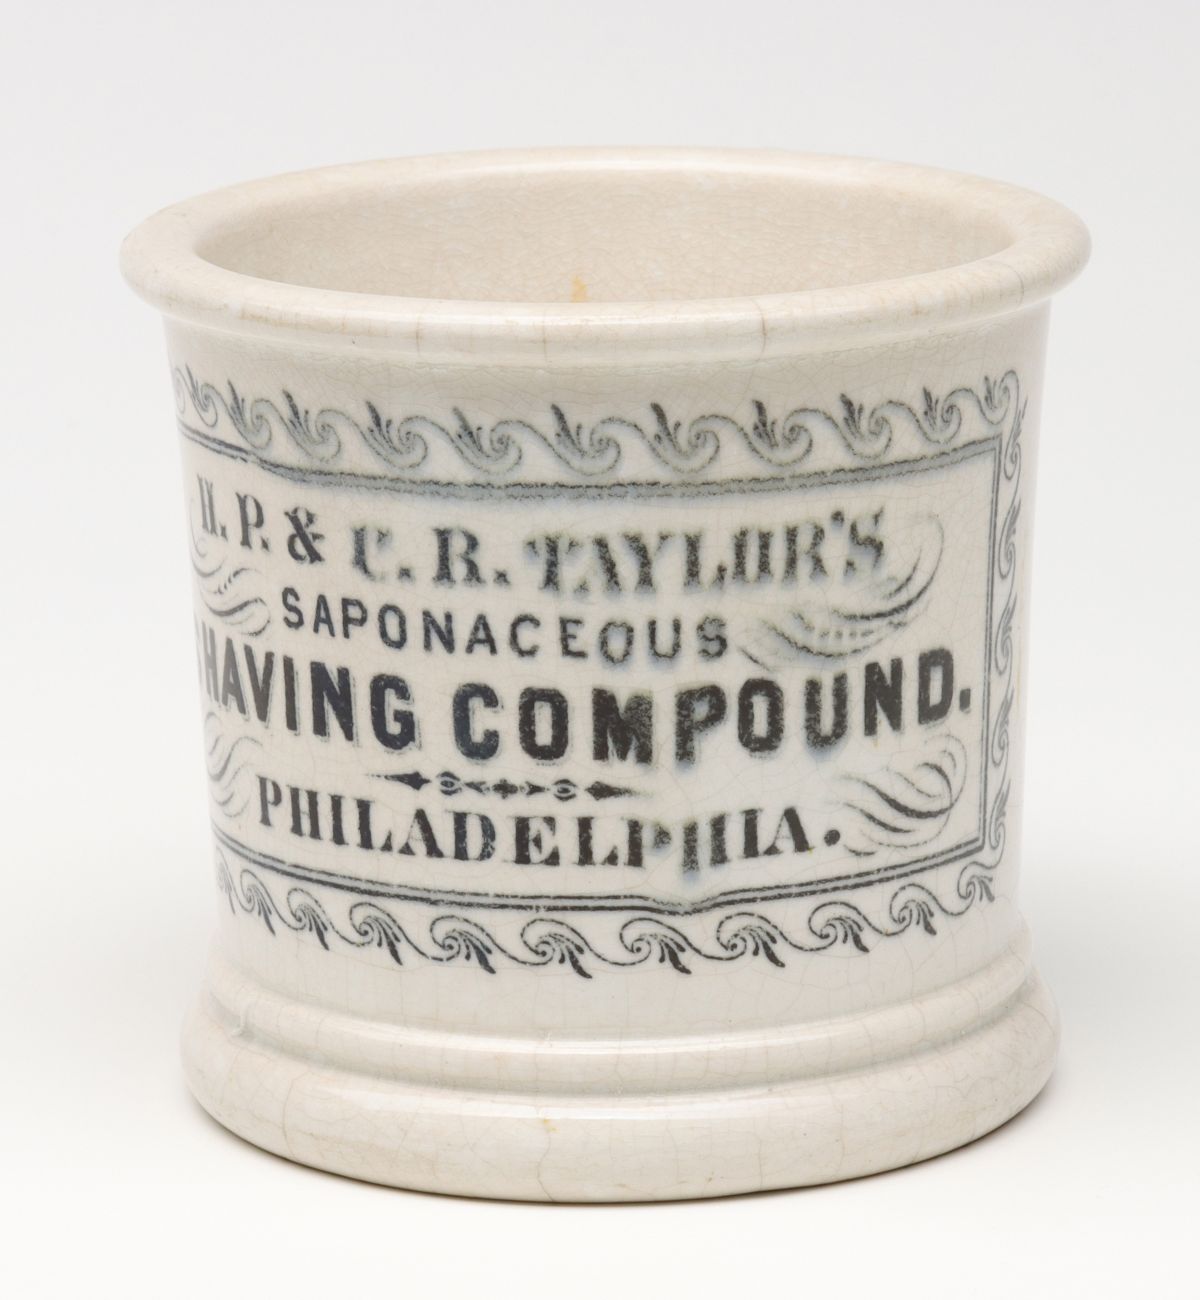 WC TAYLOR'S SAPONACEOUS SHAVING COMPOUND POTTERY JAR